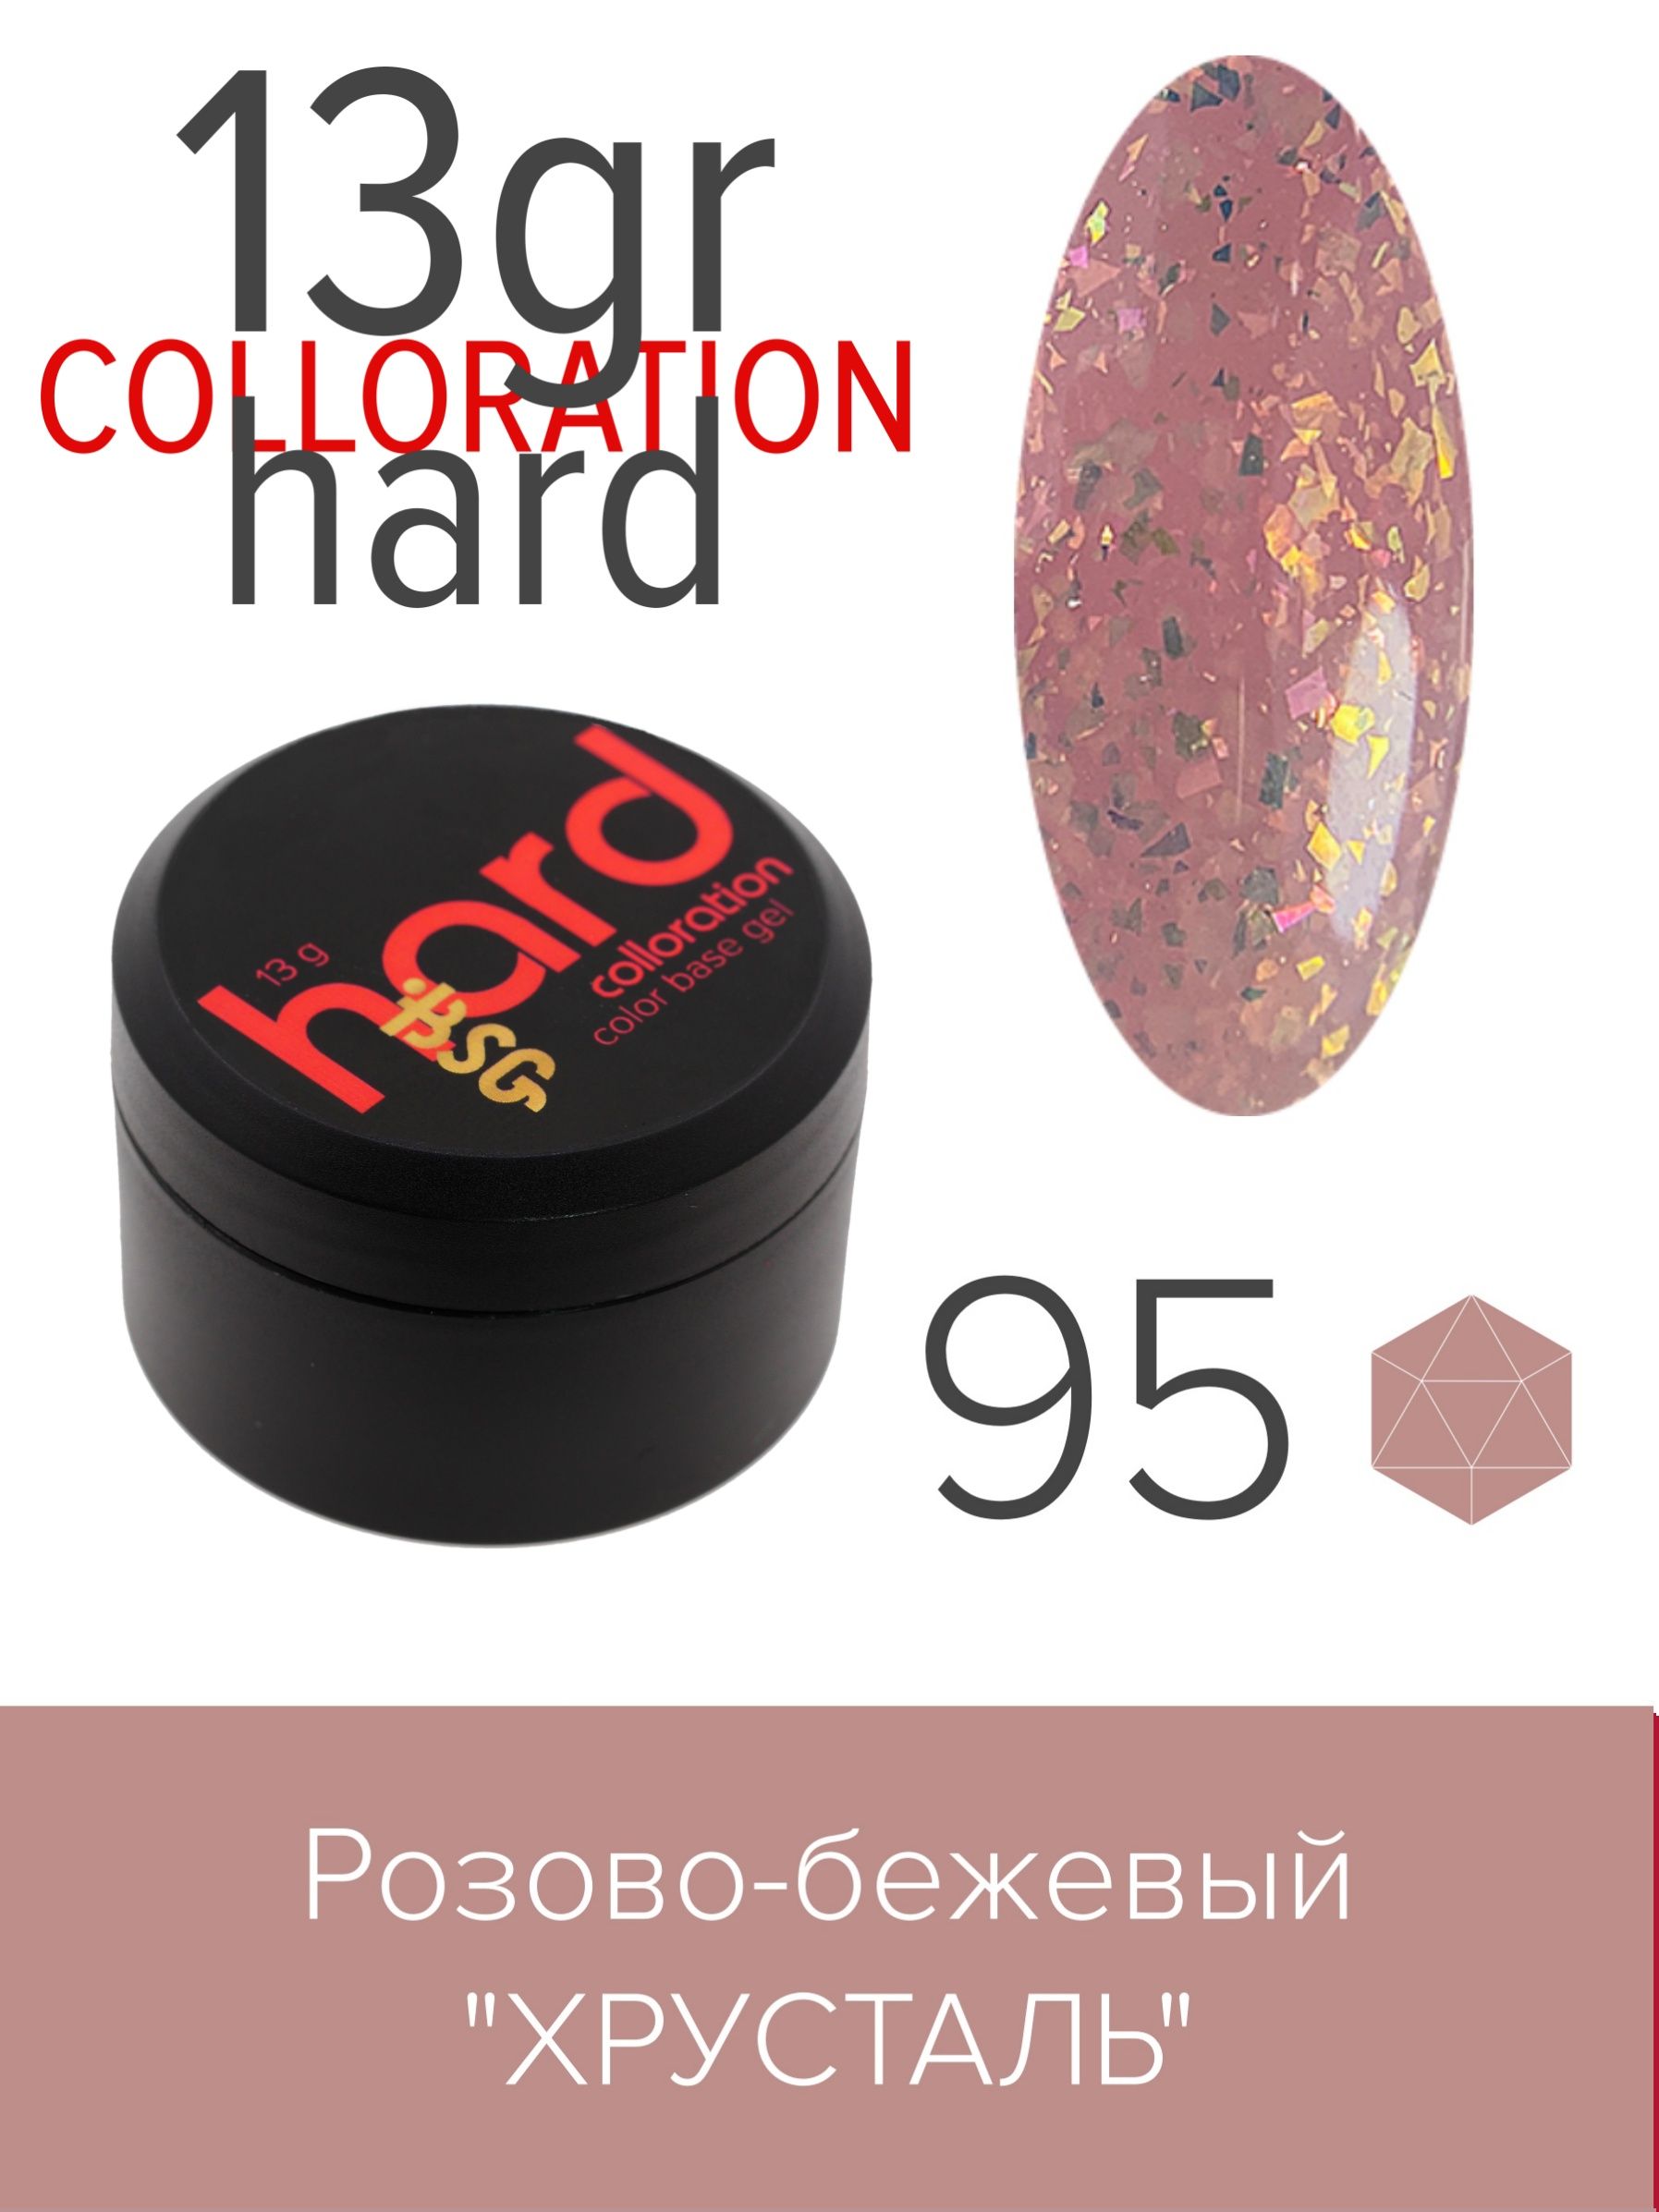 База BSG Colloration Hard цветная жесткая №95 molecularisbeauty эликсир горный хрусталь база с гиалуроном 50